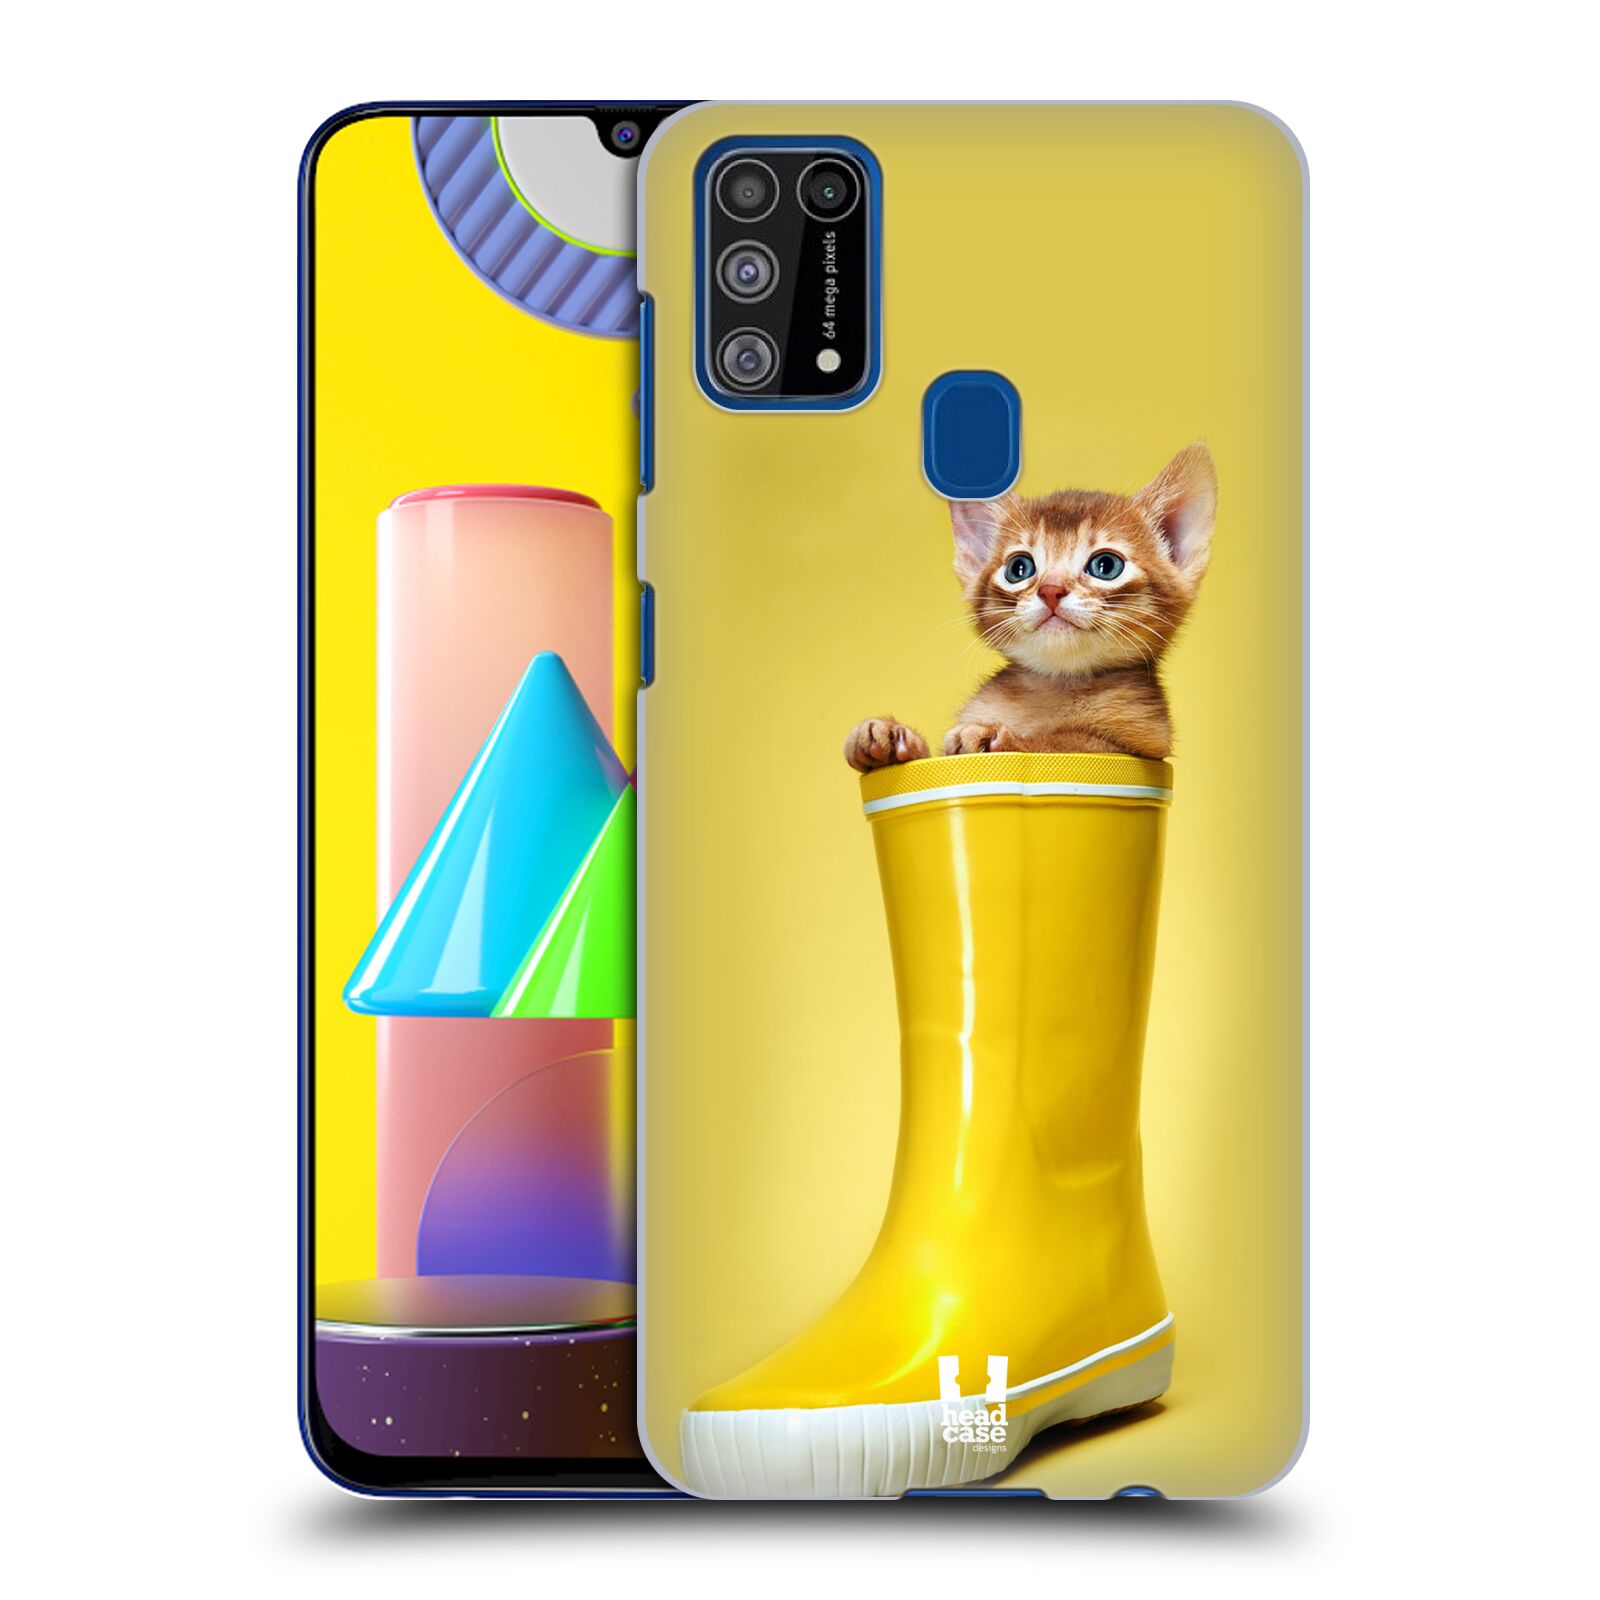 Plastový obal HEAD CASE na mobil Samsung Galaxy M31 vzor Legrační zvířátka kotě v botě žlutá